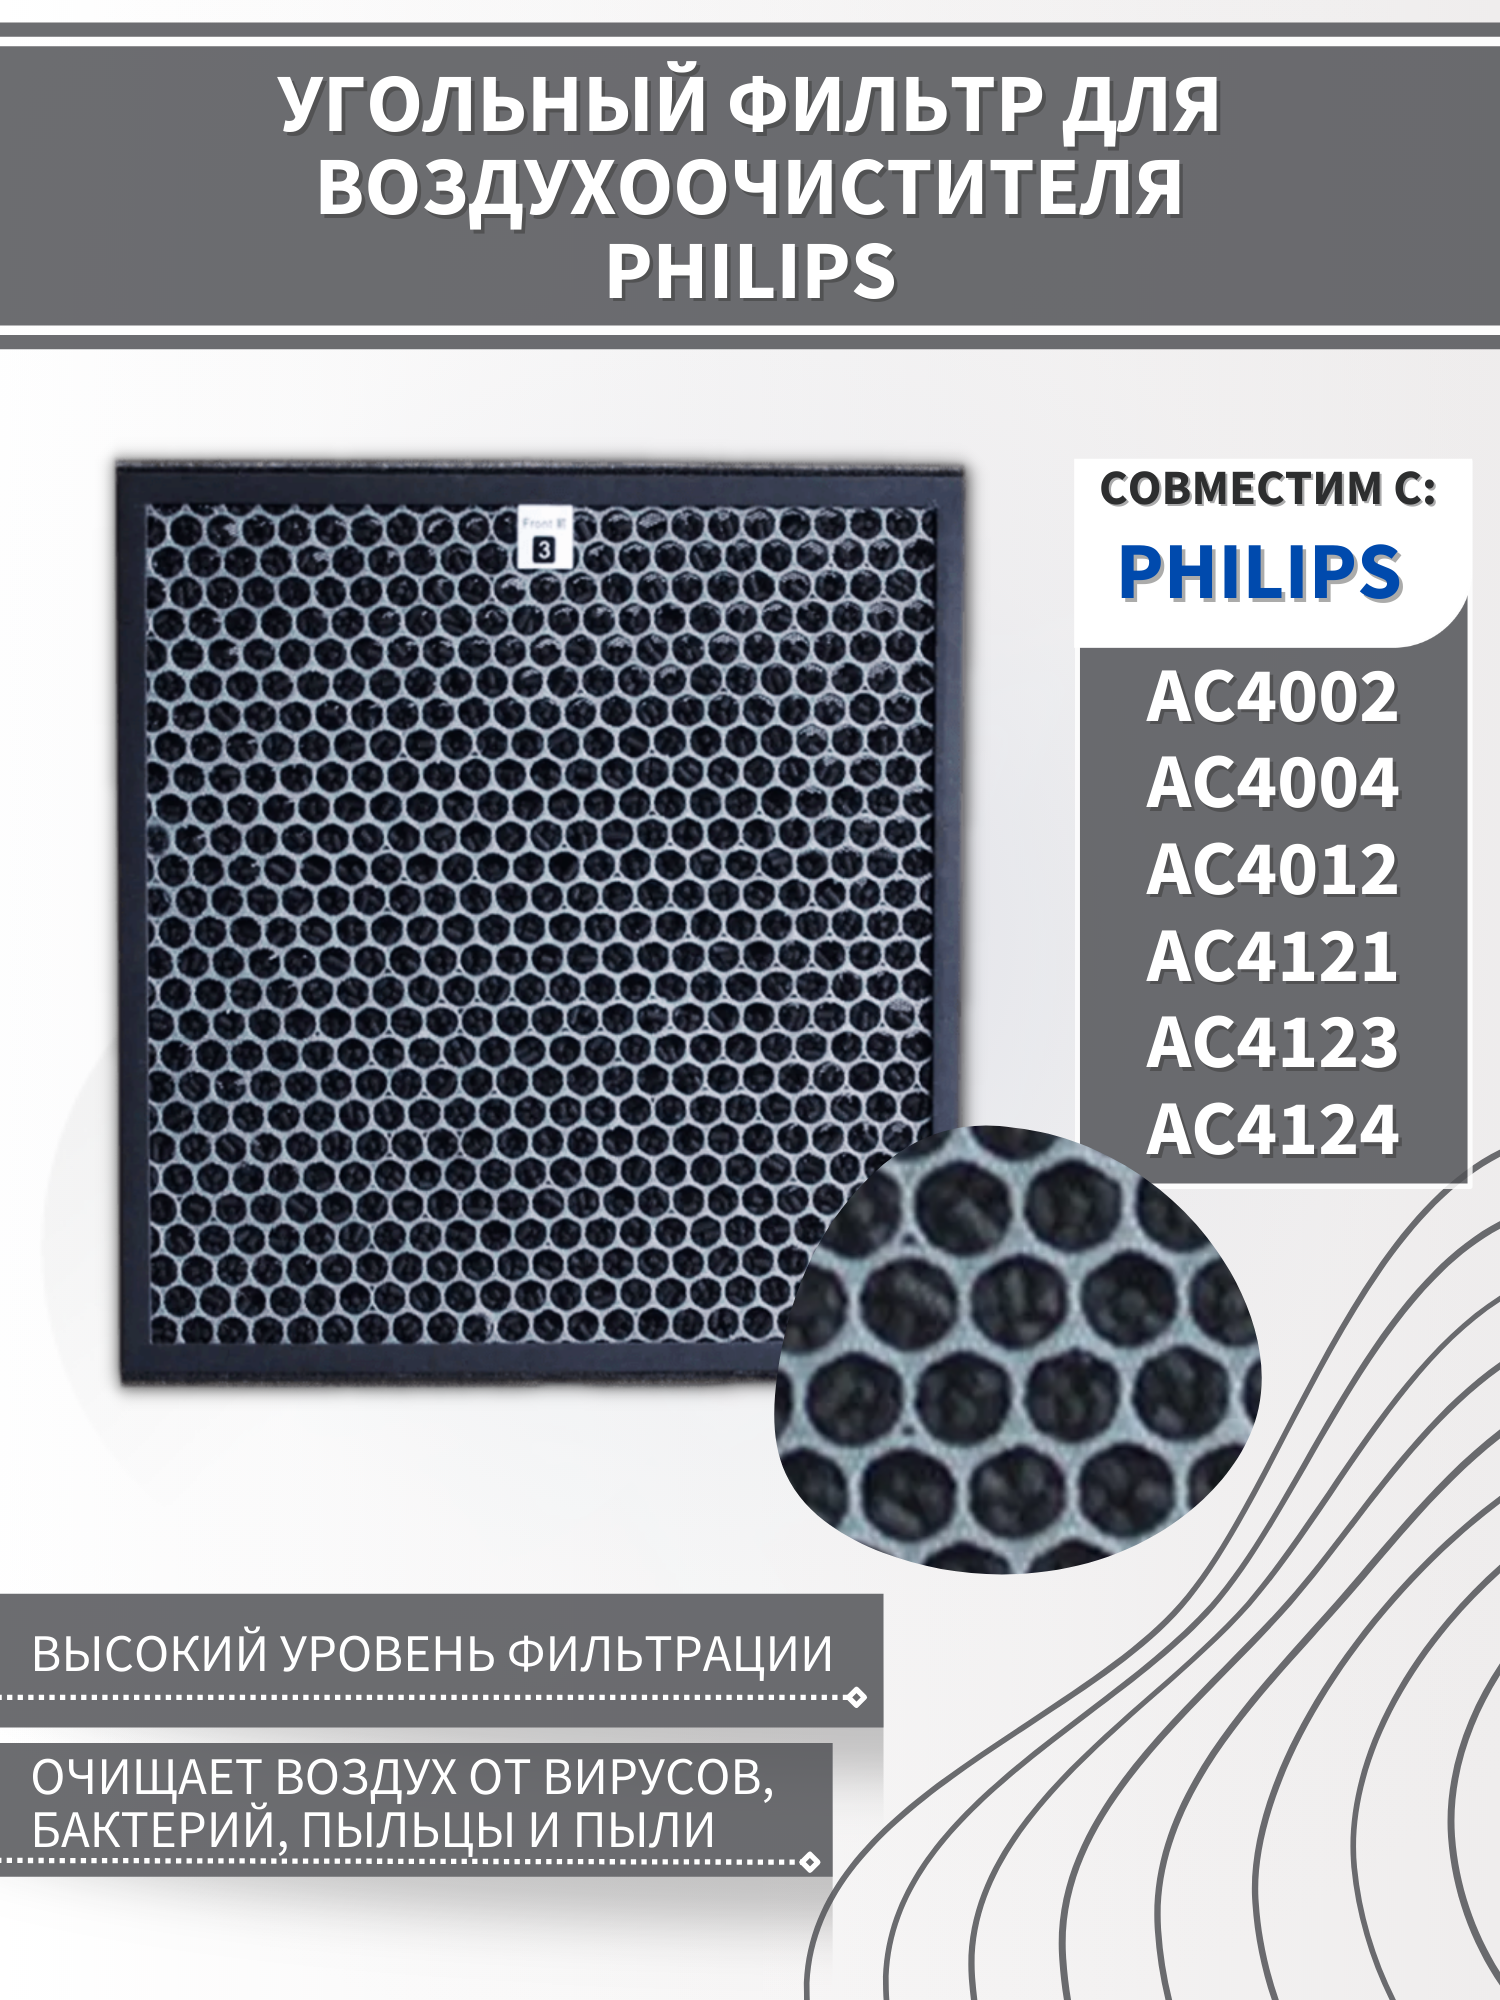 Фильтр для воздухоочистителя Philips AC4002, AC4004, AC4012, AC4121, AC4123, AC4124